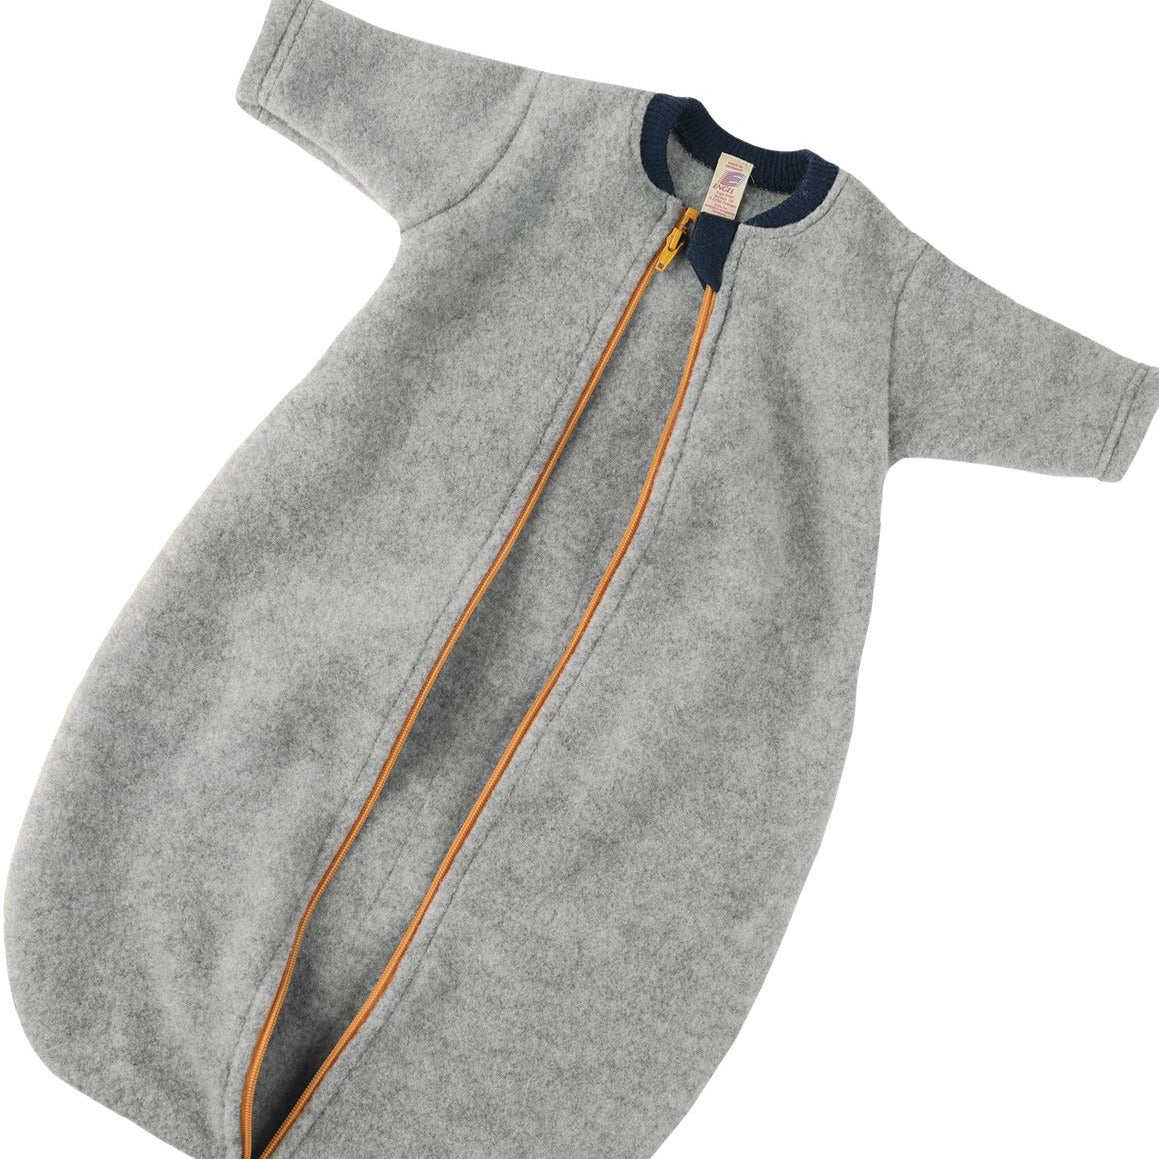 Engel Baby Sleep Sack, Long Sleeve with Zipper, Fleece